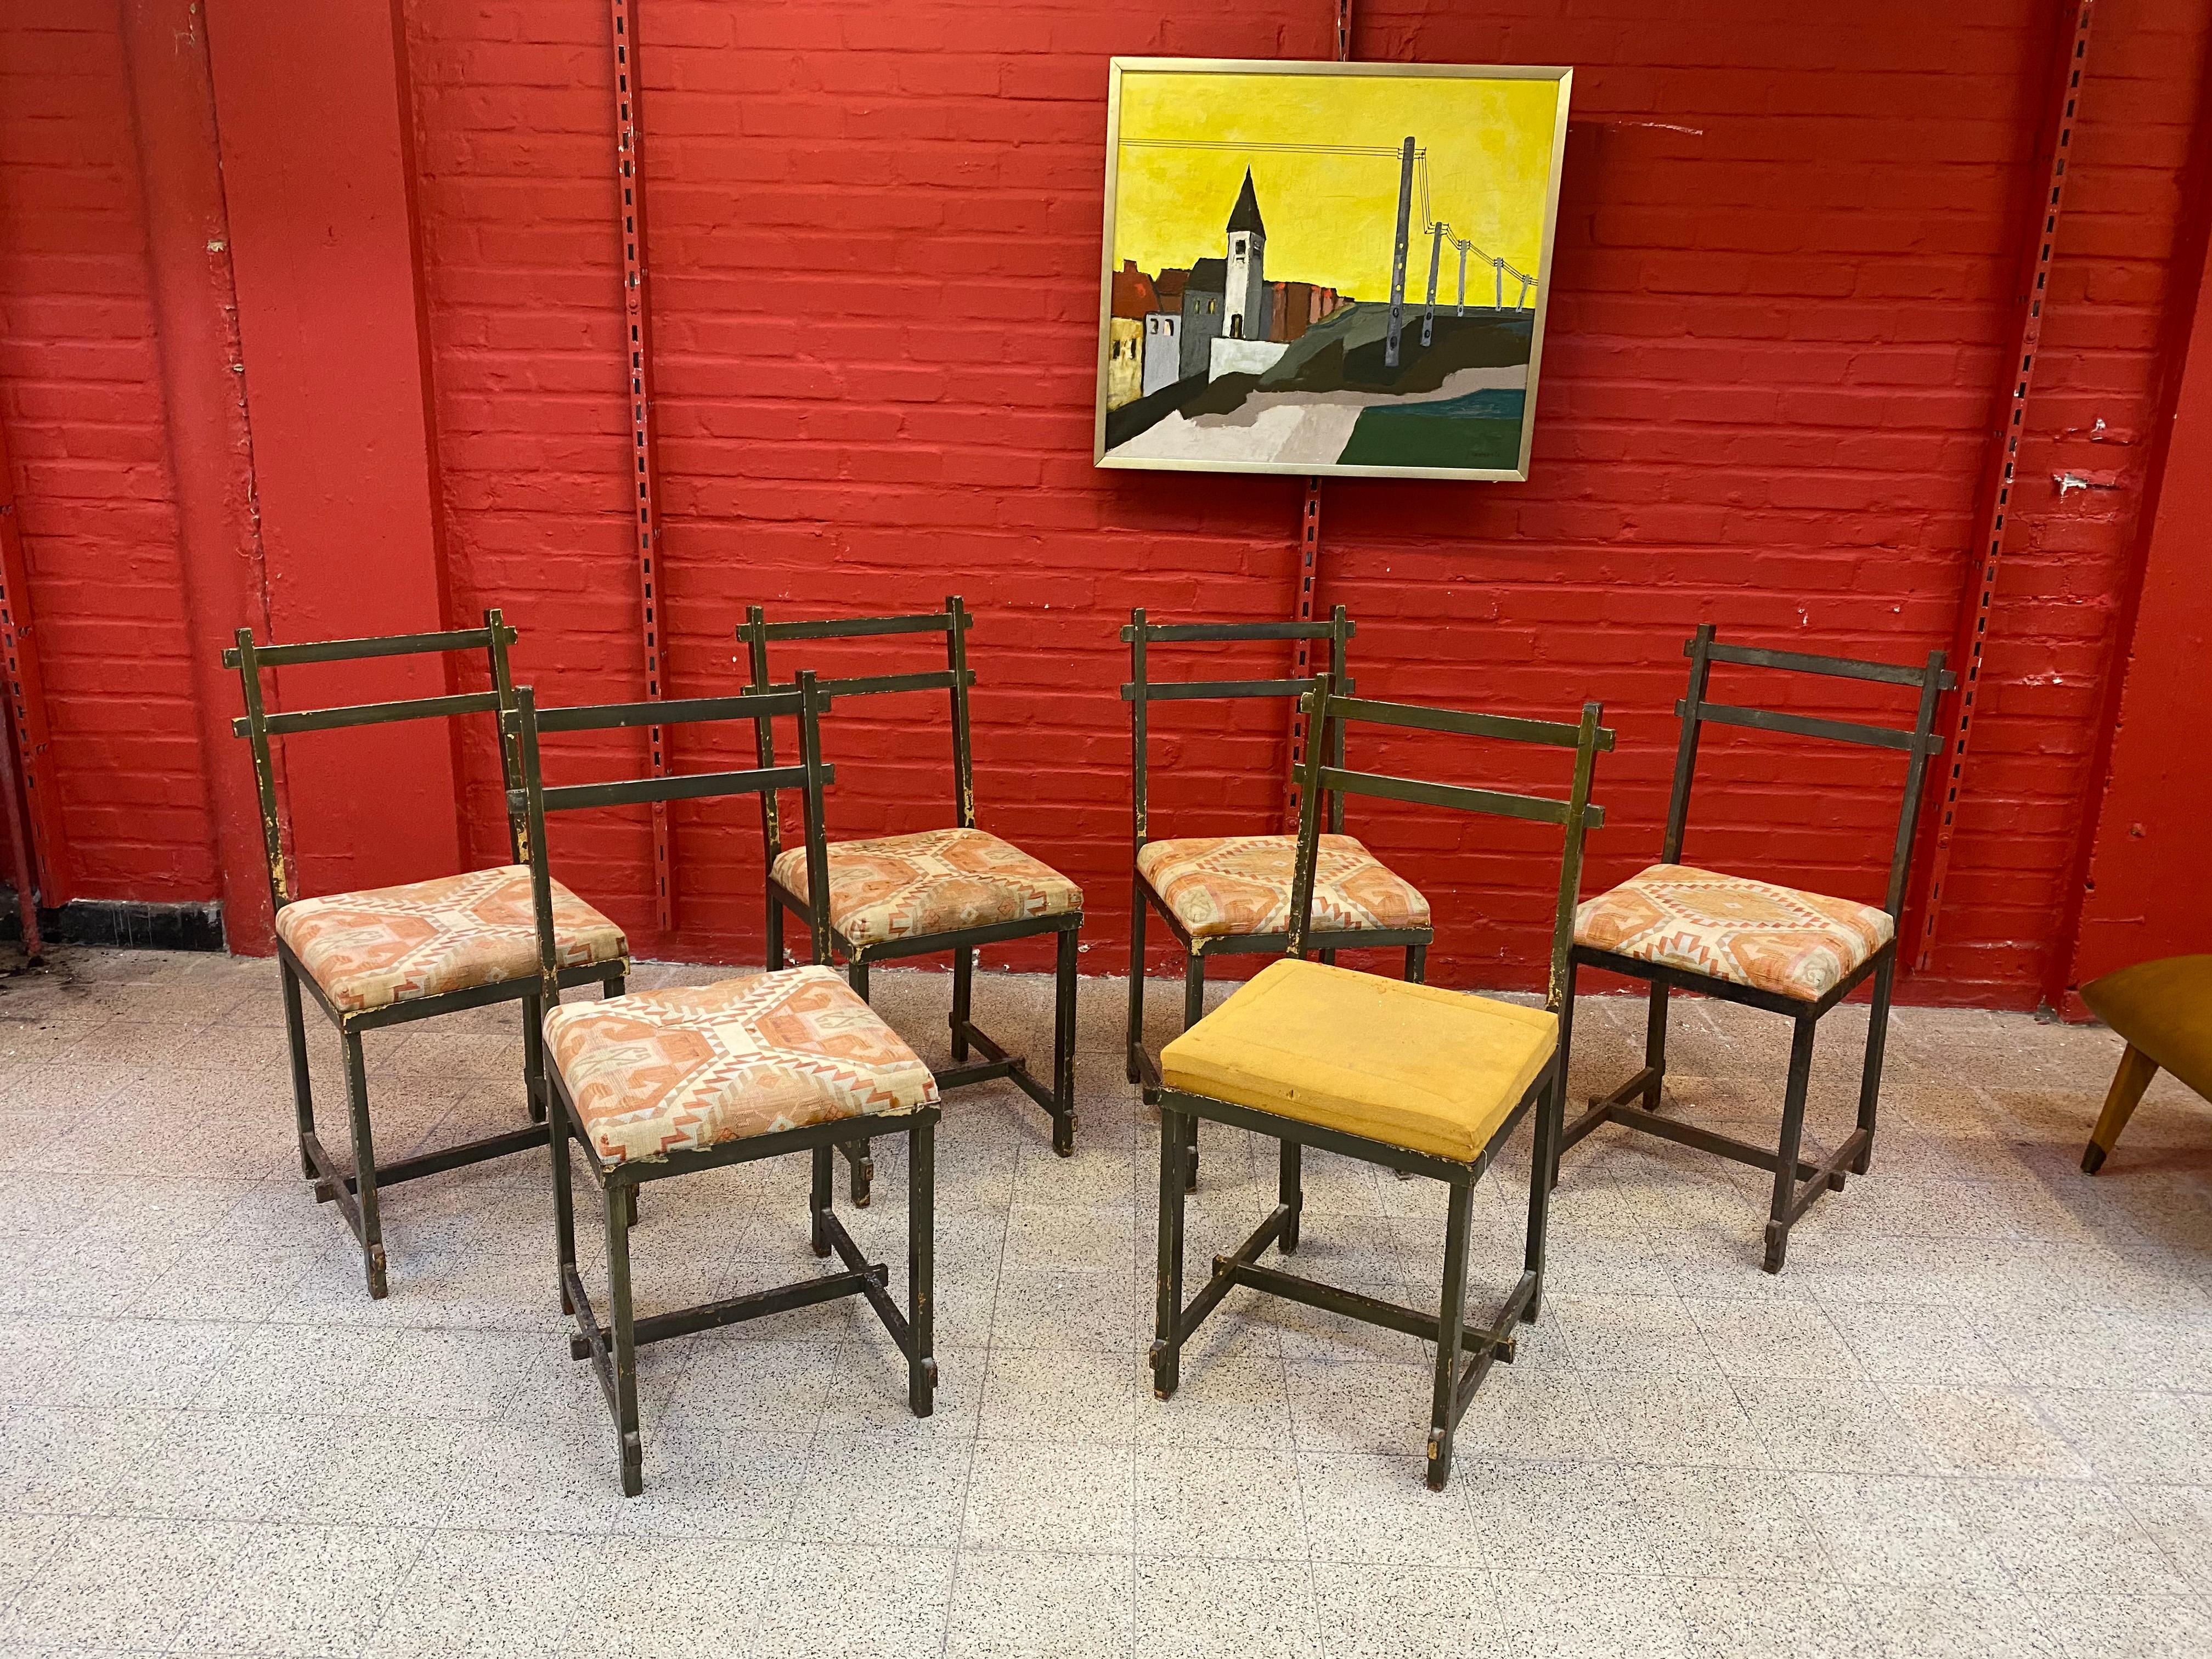 Ensemble original de 6 chaises en métal laqué, dans le style de Jacques Adnet vers 1940/1950.
de nombreuses lacunes et une usure de la laque. 
1 table, un buffet et 2 tabourets sont également disponibles et présentés dans d'autres annonces.